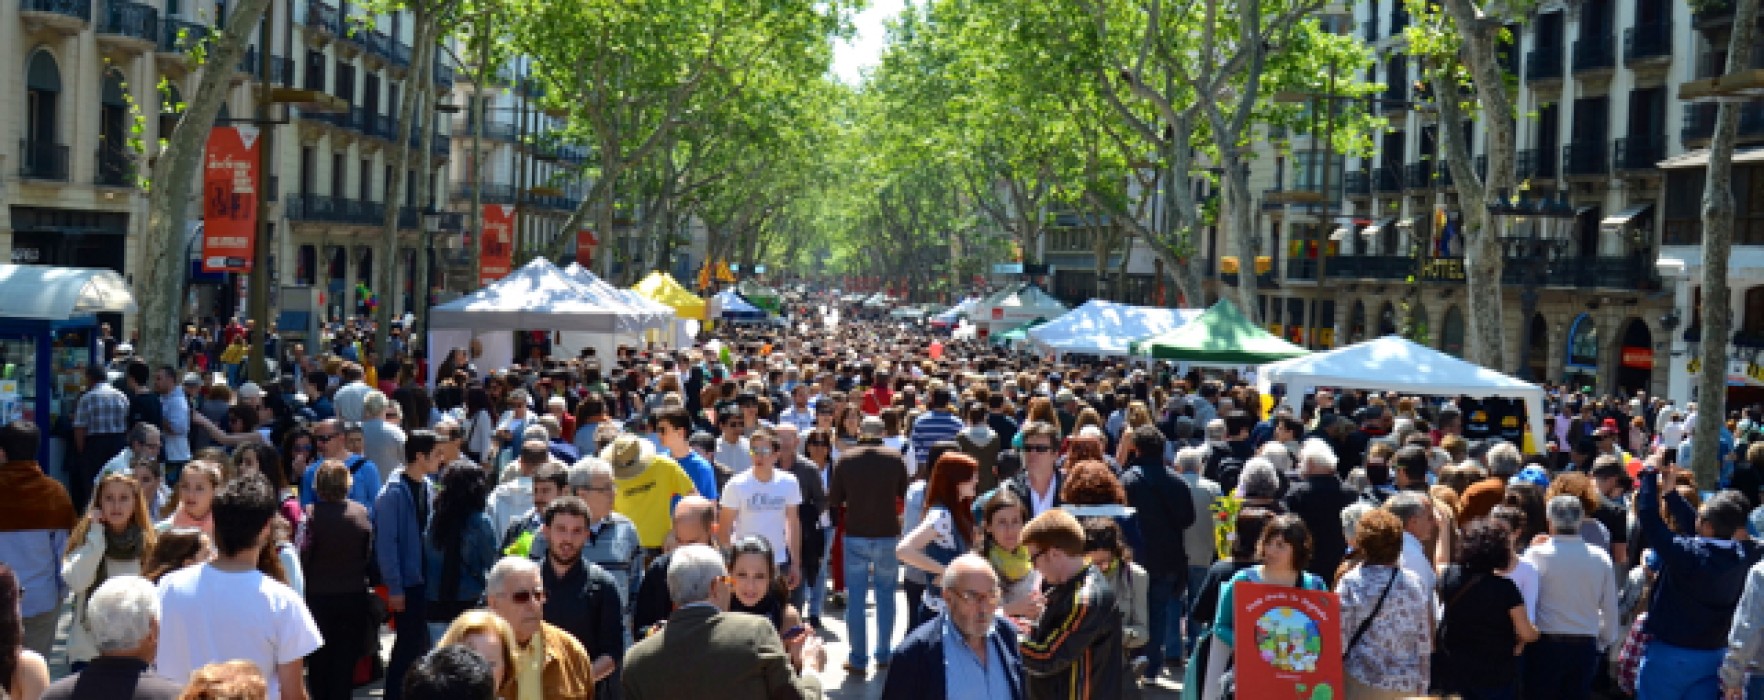 Libri e rose contro la crisi. La festa di Sant Jordi a Barcellona